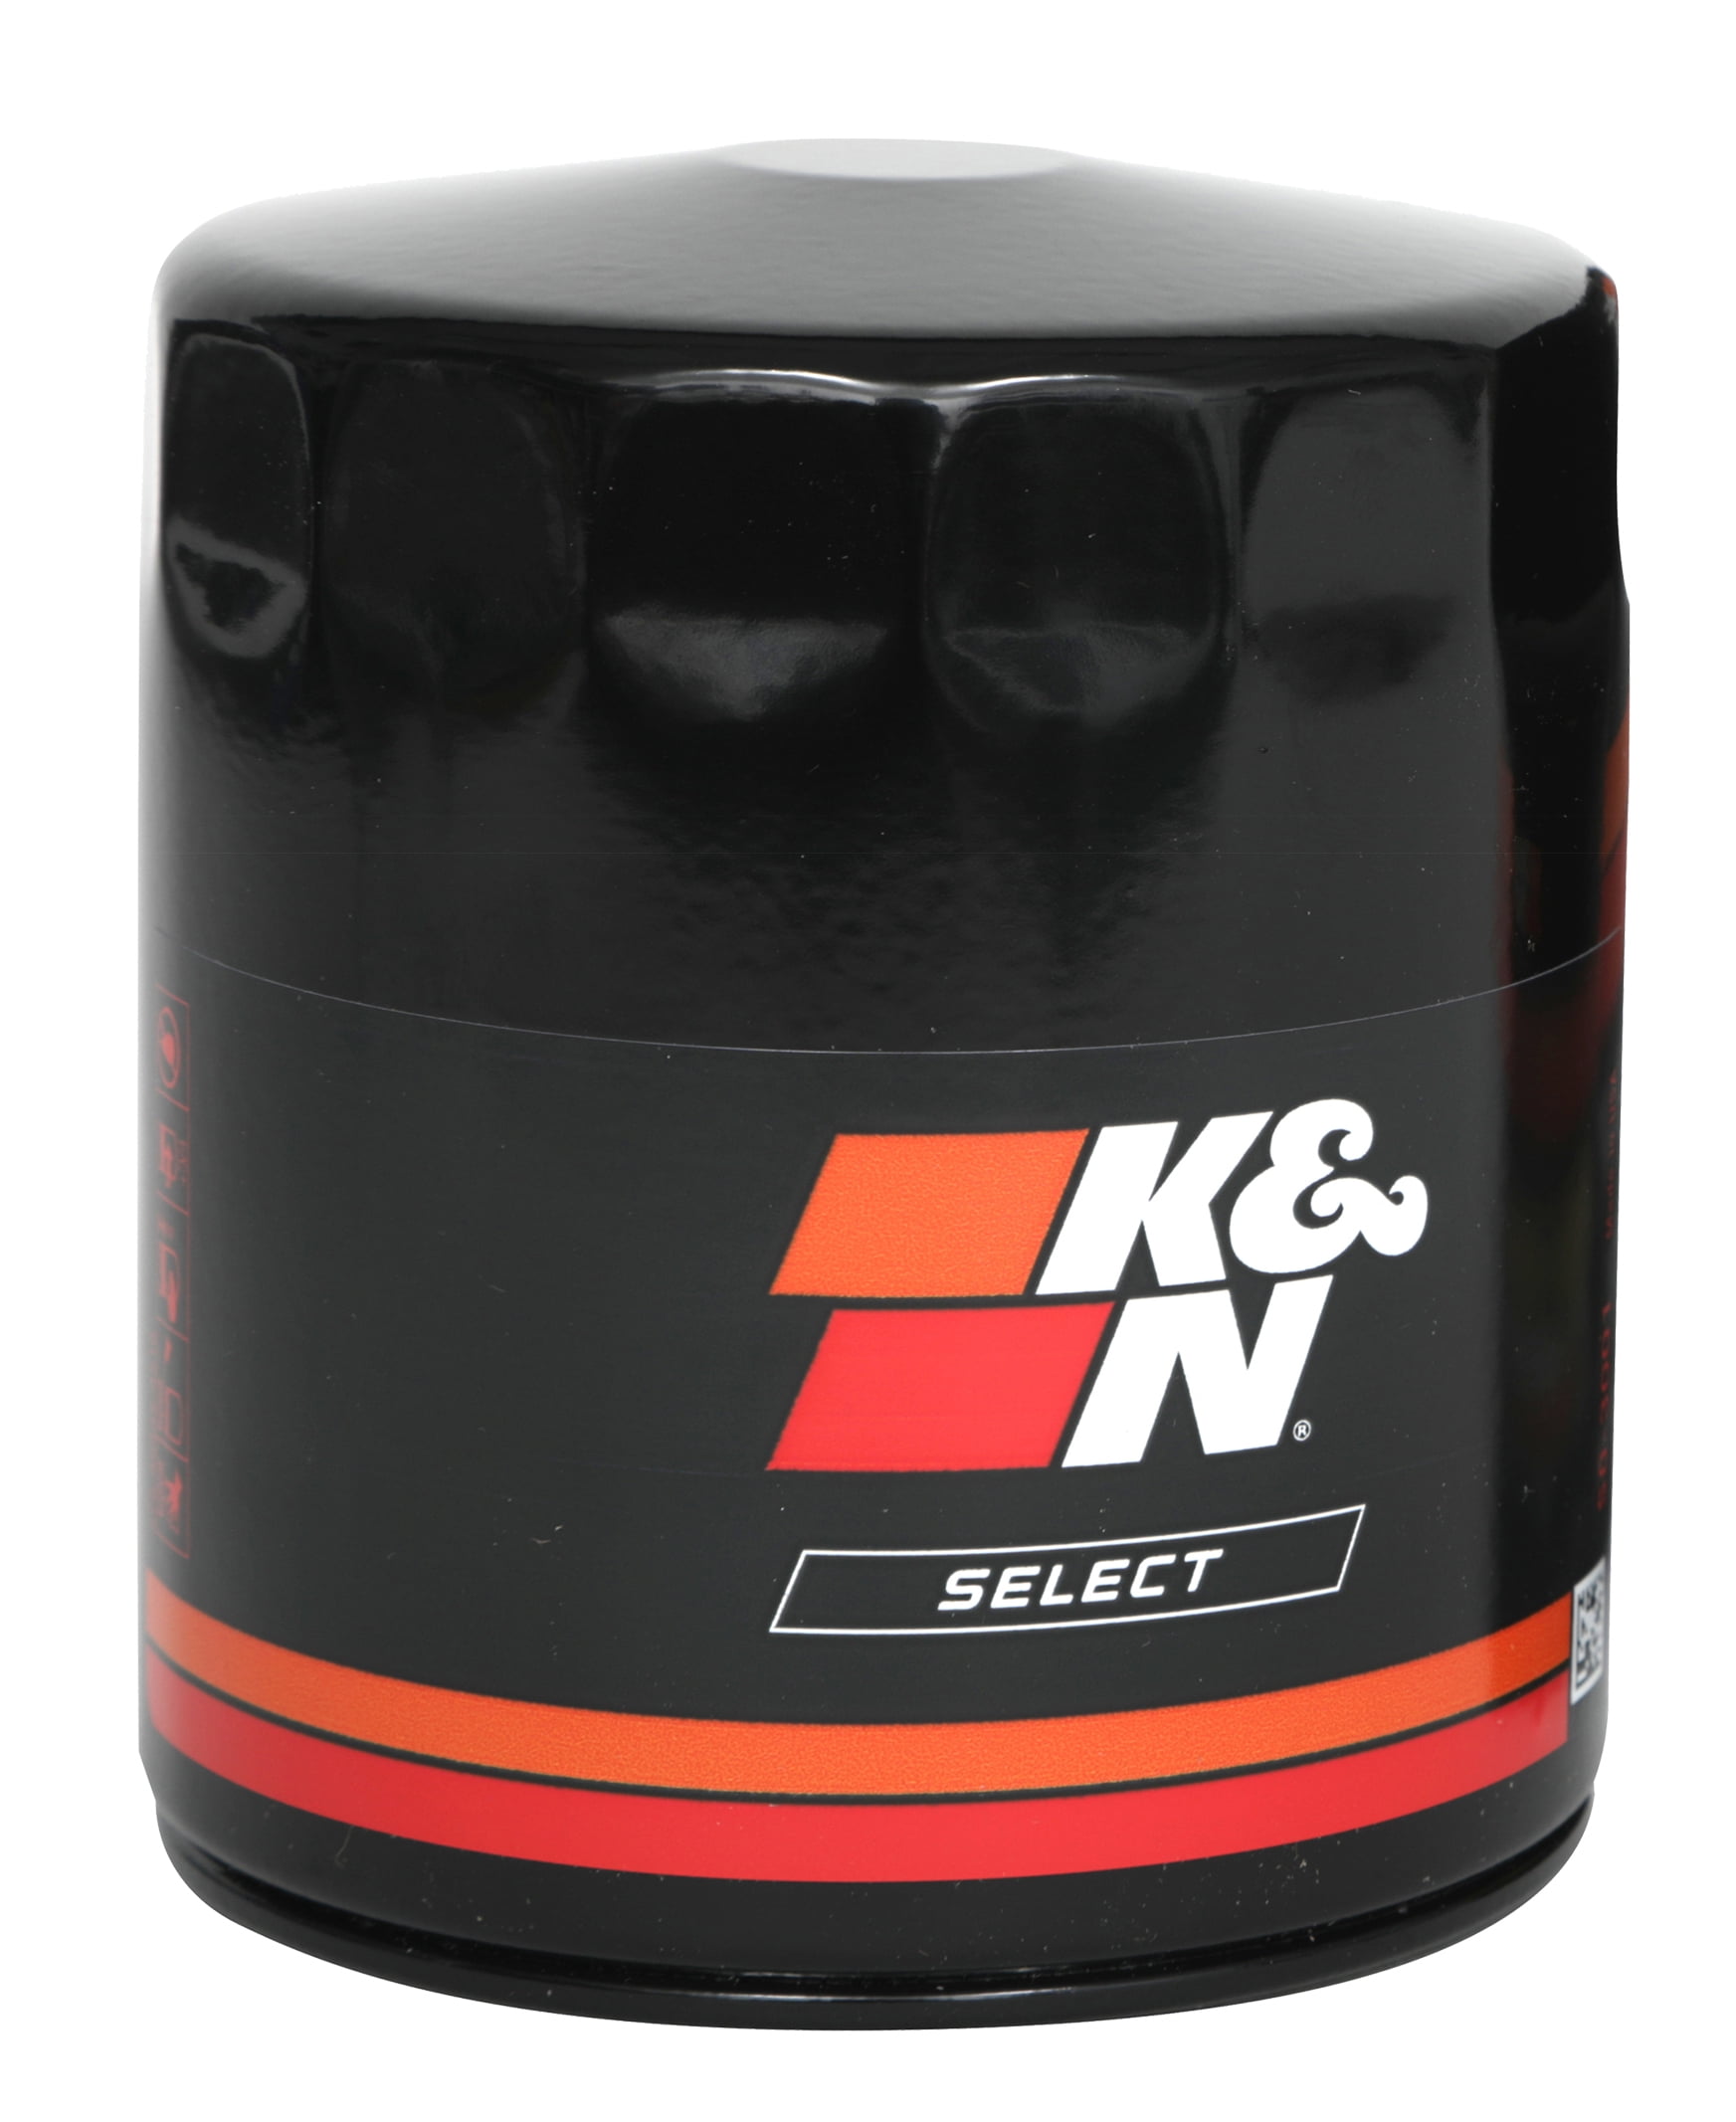 K&n Oil Filter Triumph Bonneville 2006-2014 KN204